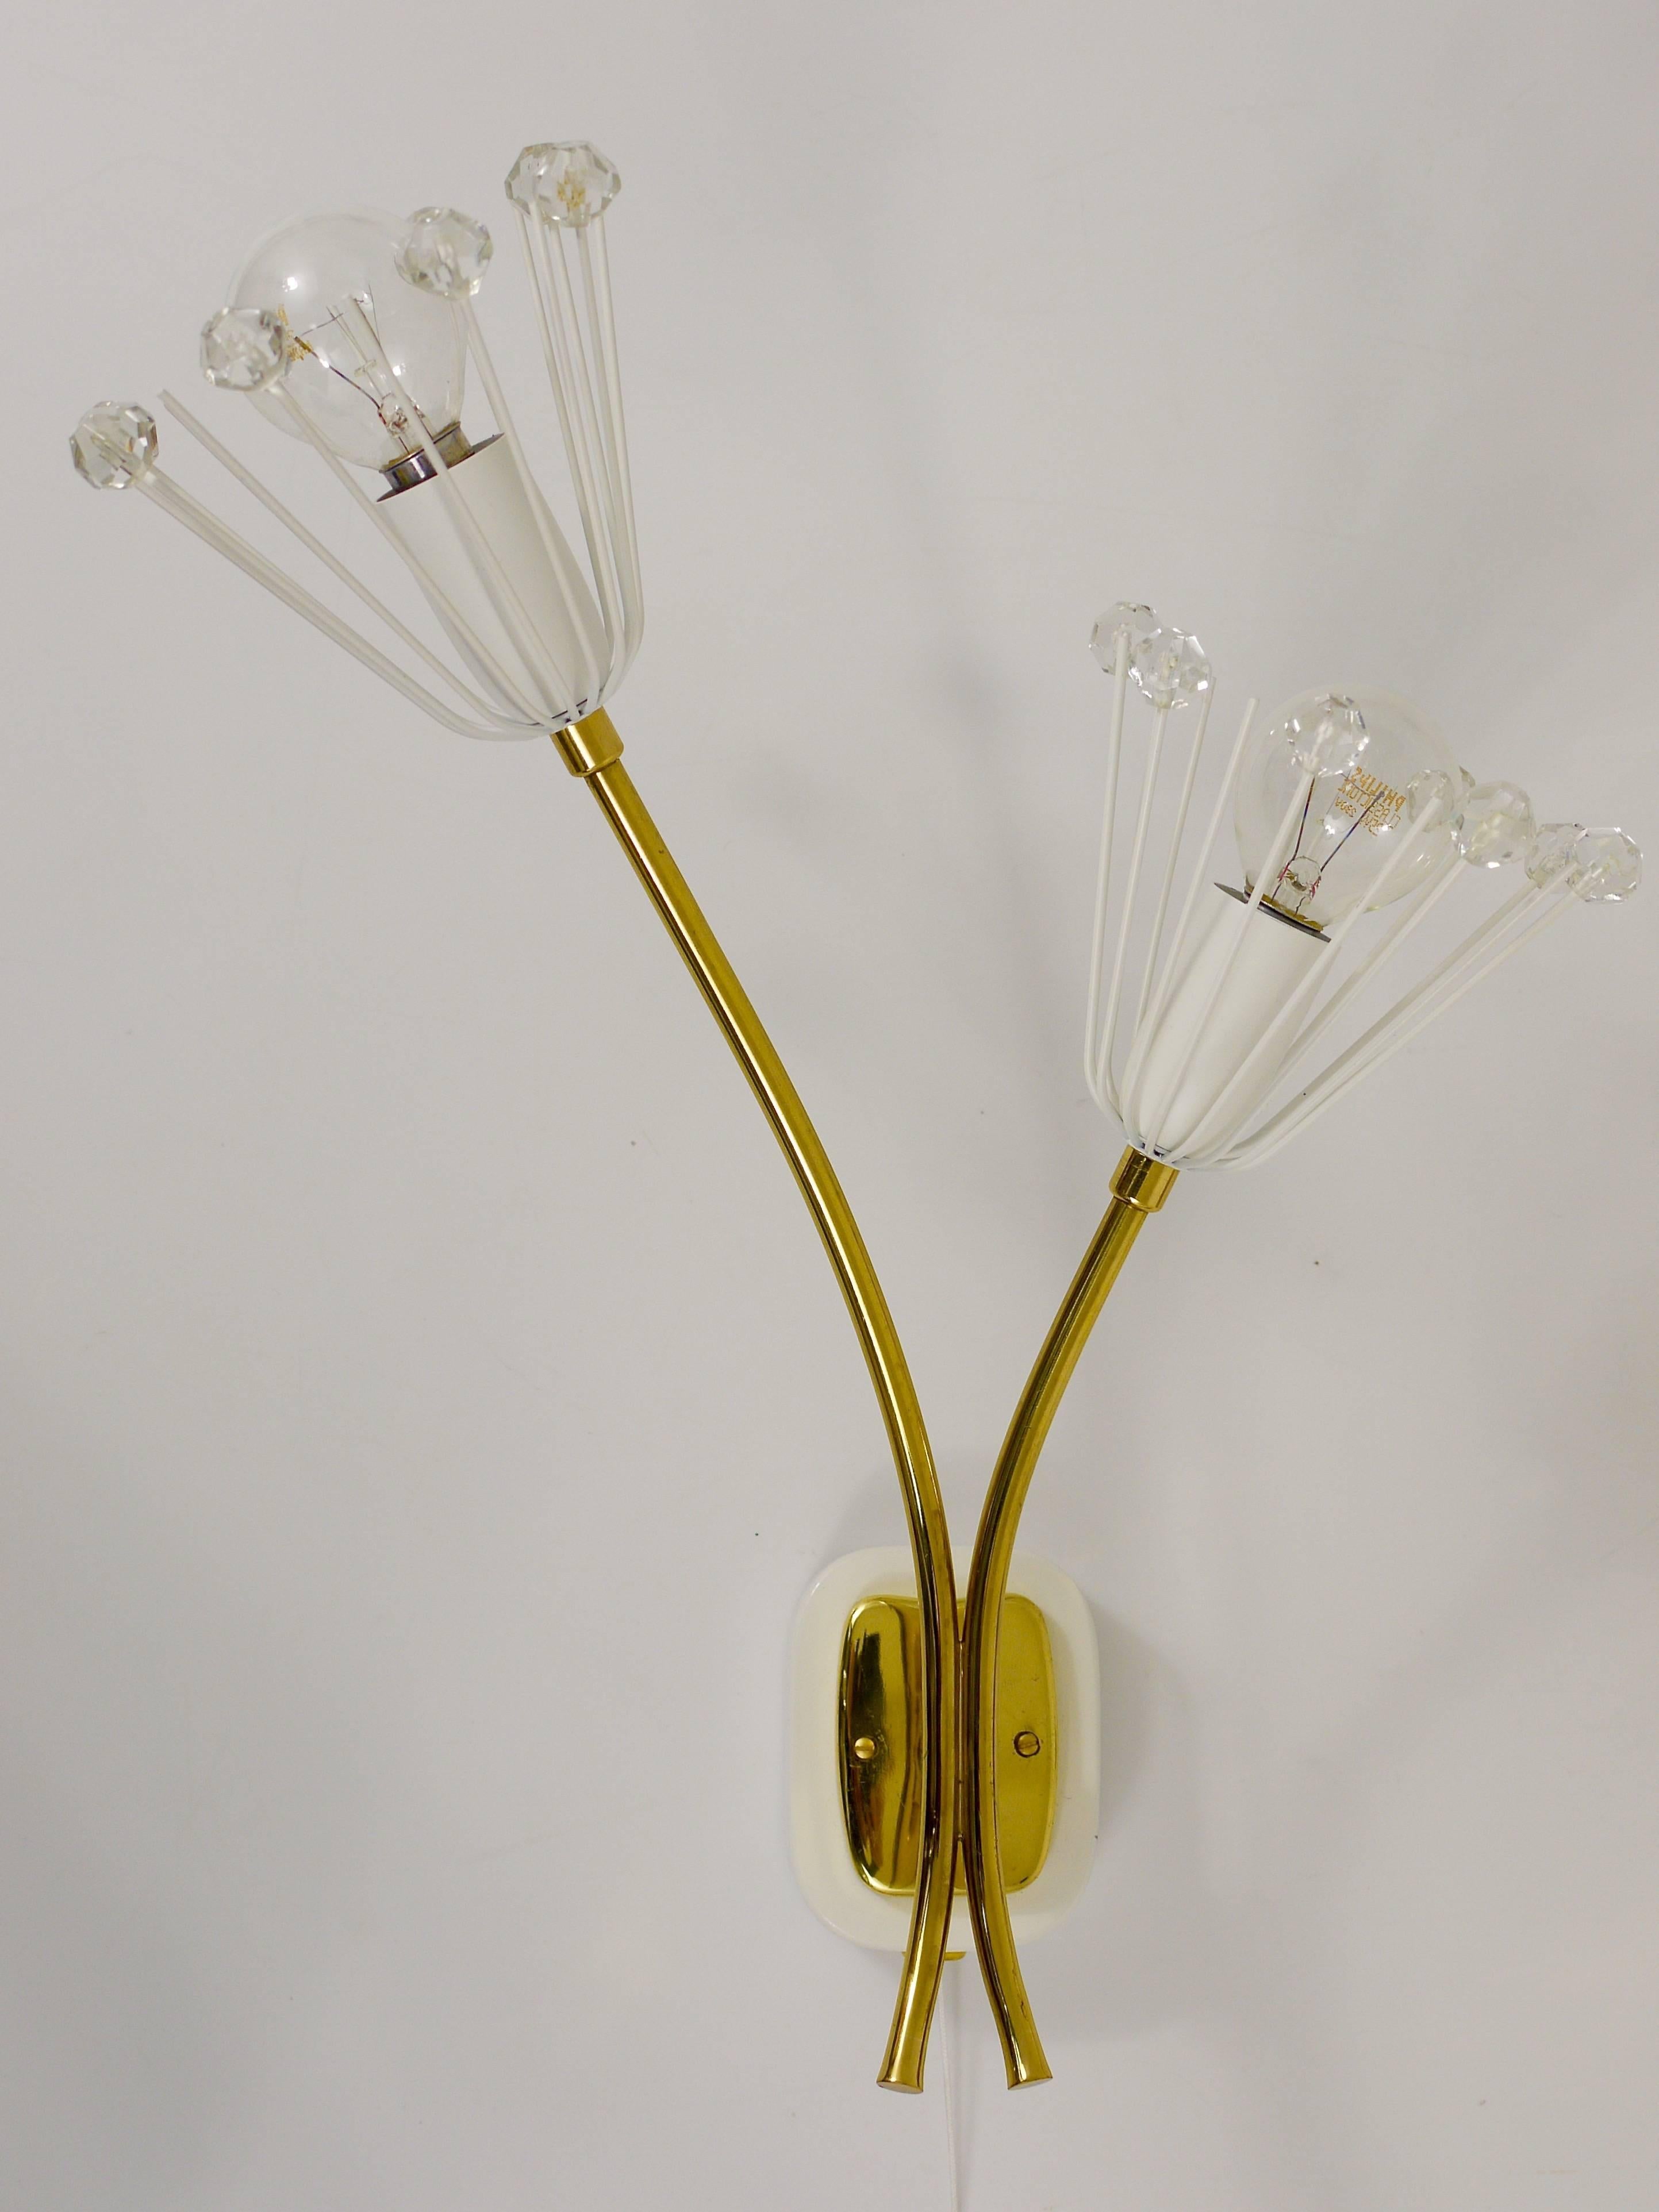 Jusqu'à 3 paires identiques d'appliques autrichiennes en laiton fleuri avec deux bras et cristaux de verre et interrupteurs intégrés. Conçu par Emil Stejnar, exécuté par Rupert Nikoll dans les années 1950. Restaurés et recâblés par des